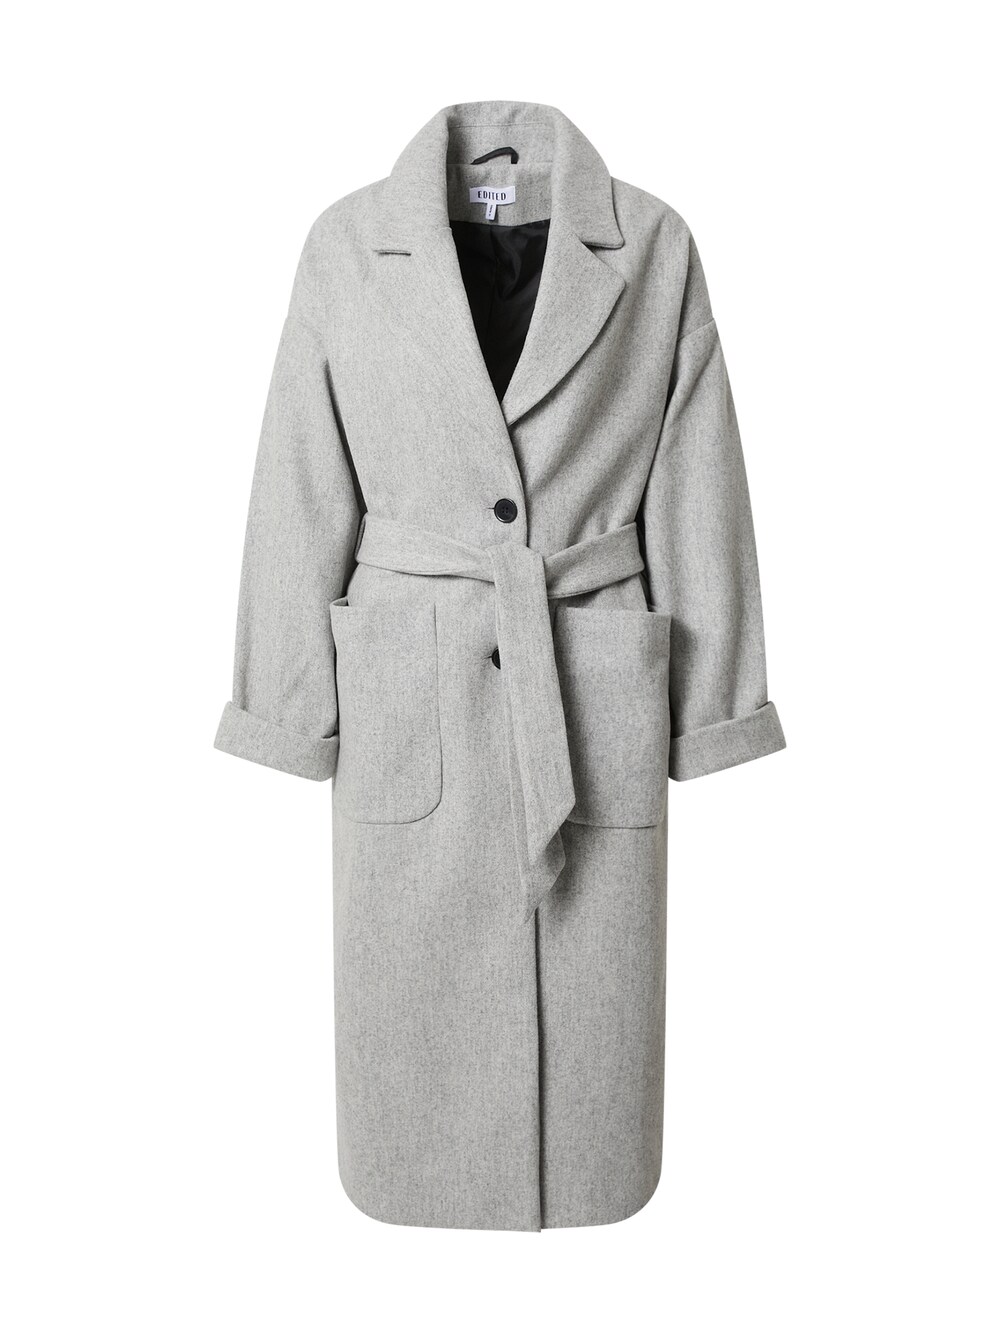 Межсезонное пальто EDITED Santo, пестрый серый межсезонное пальто s oliver пестрый бежевый